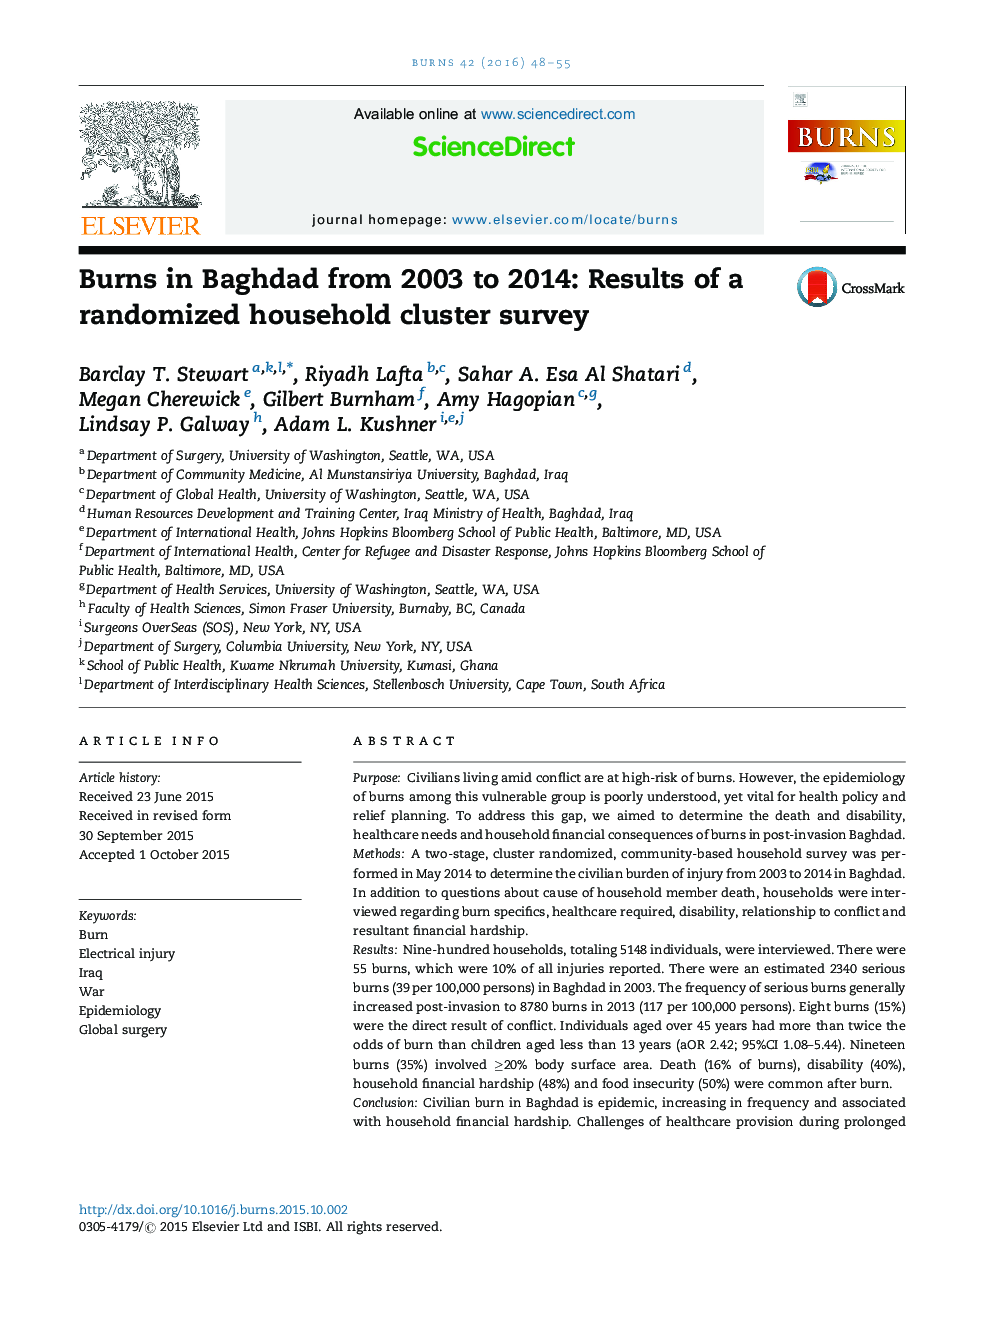 سوختگی در بغداد از سال 2003 تا 2014: نتایج یک مطالعه خوشه بندی خانگی تصادفی